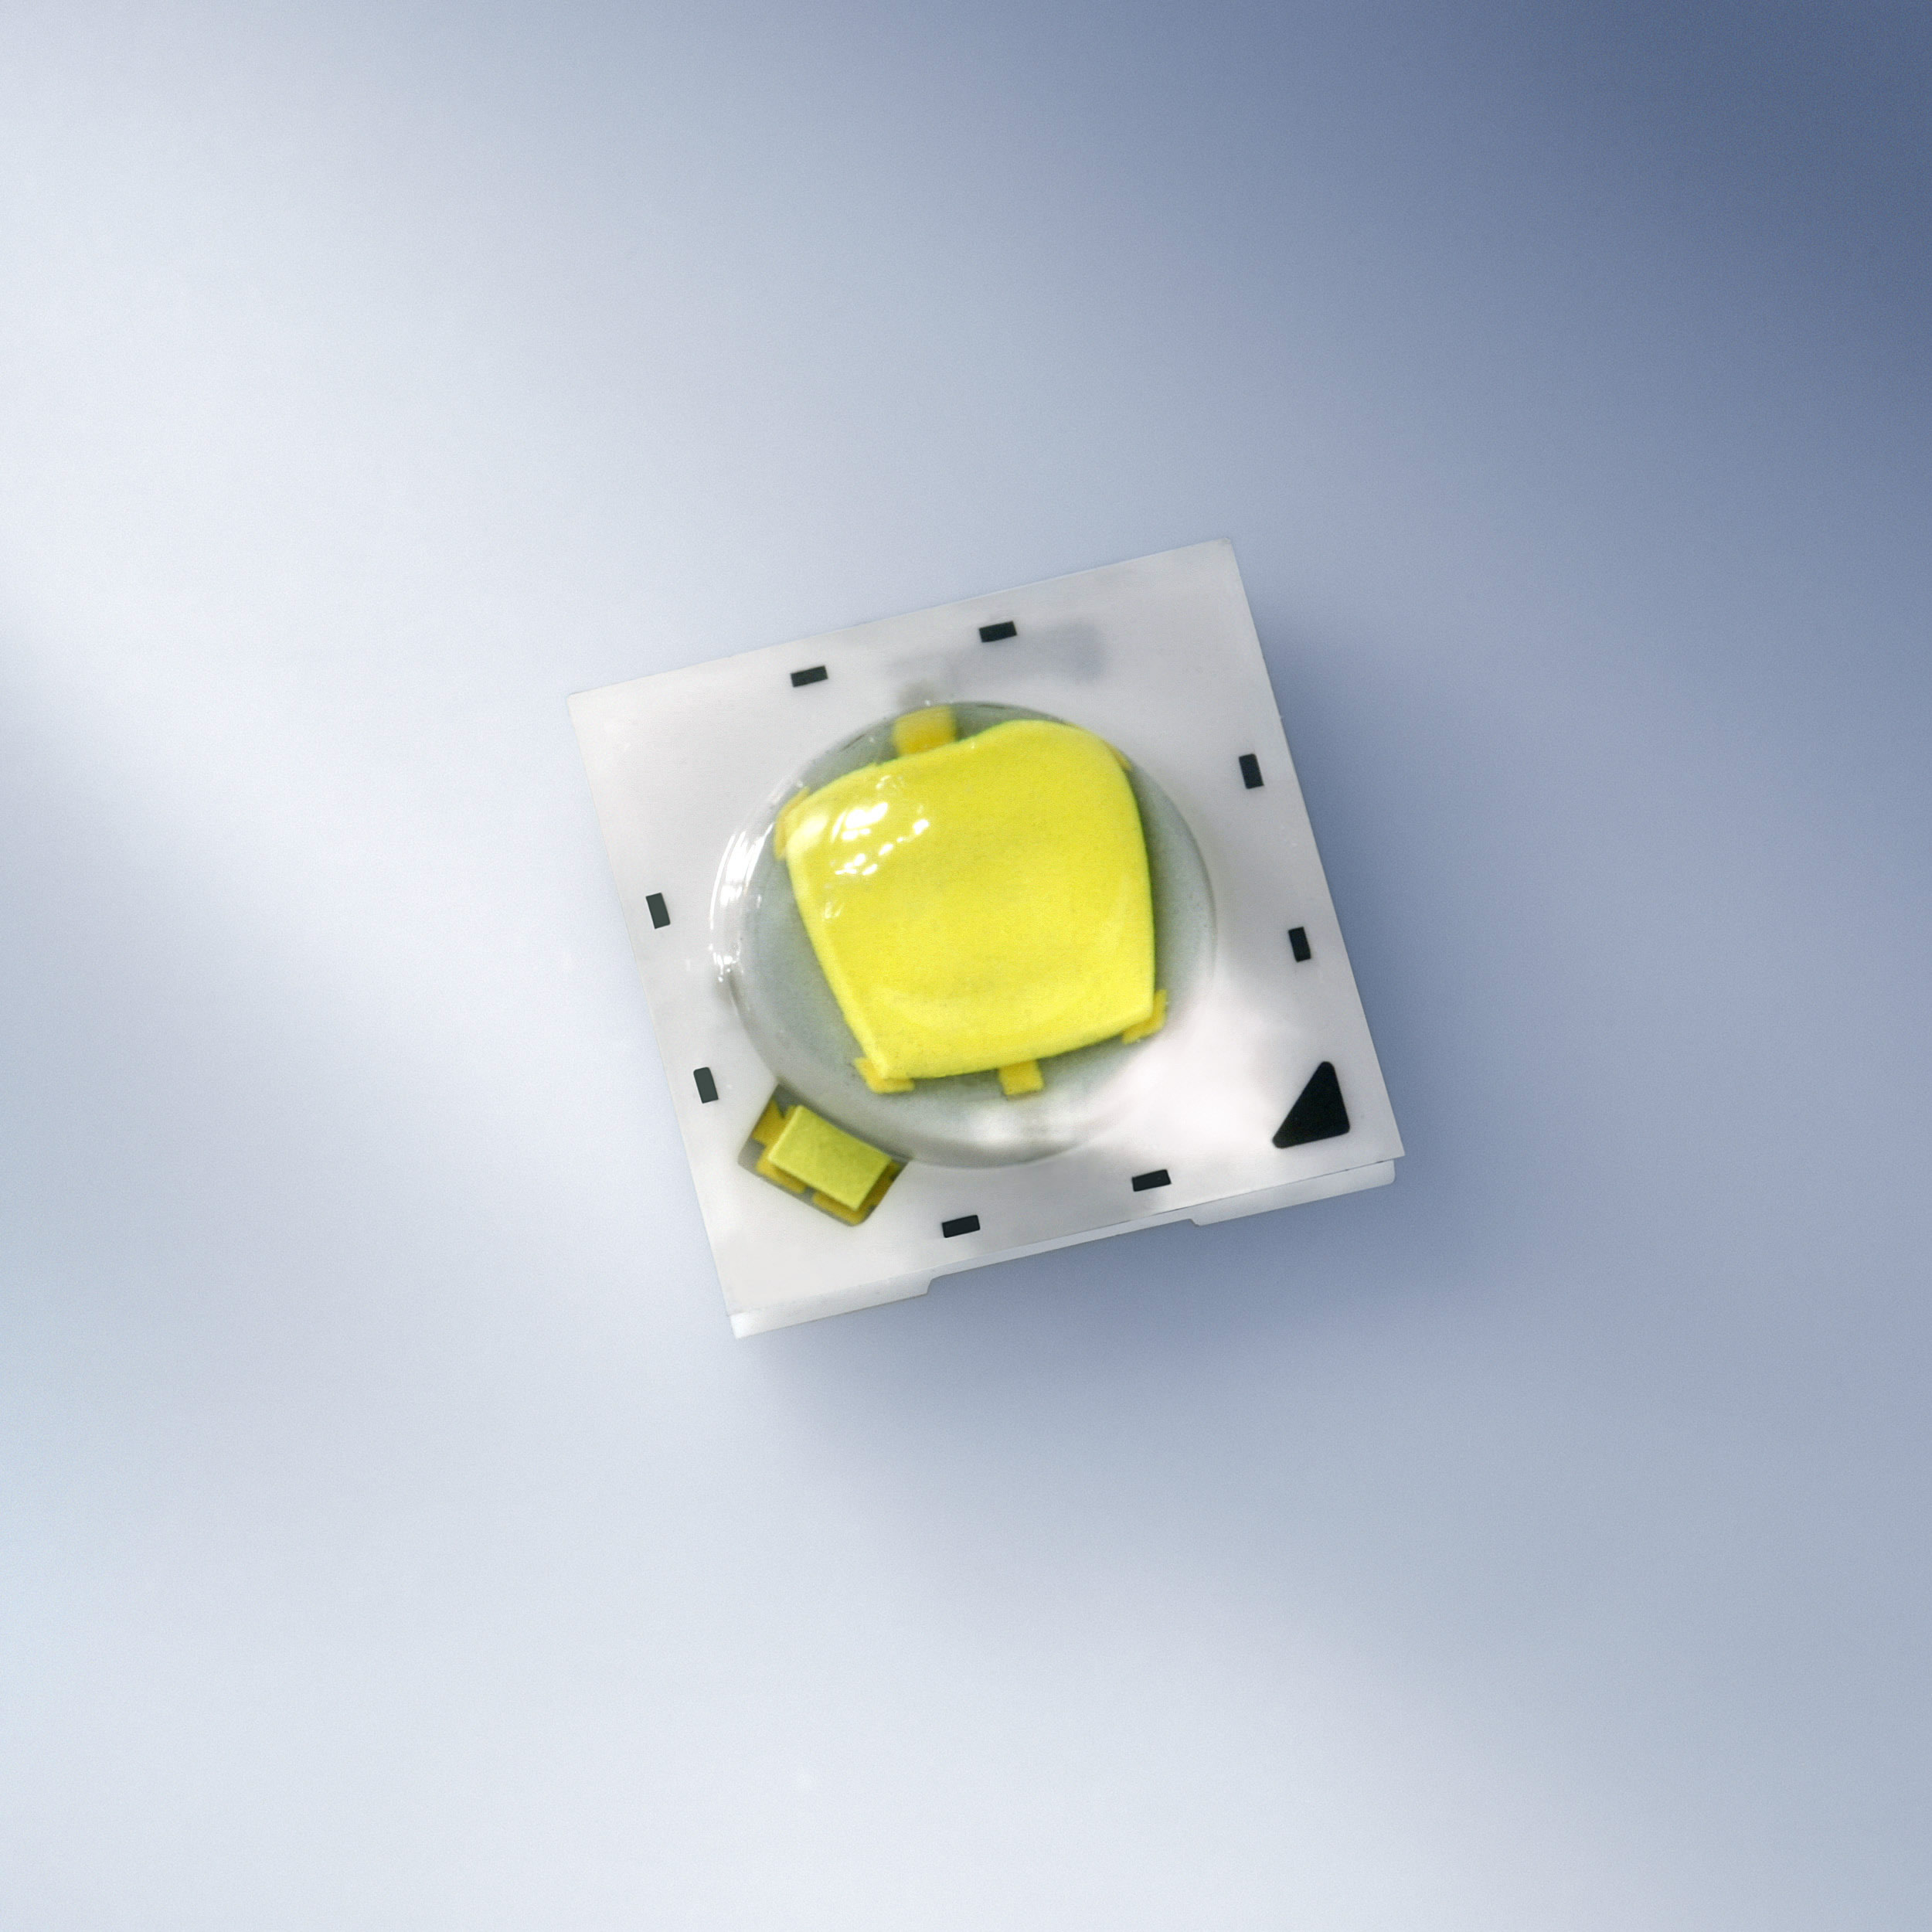 Nichia NCSA219B-V1 SMD-LED pe placuta PCB(Stea), 117lm, Amber 117lm